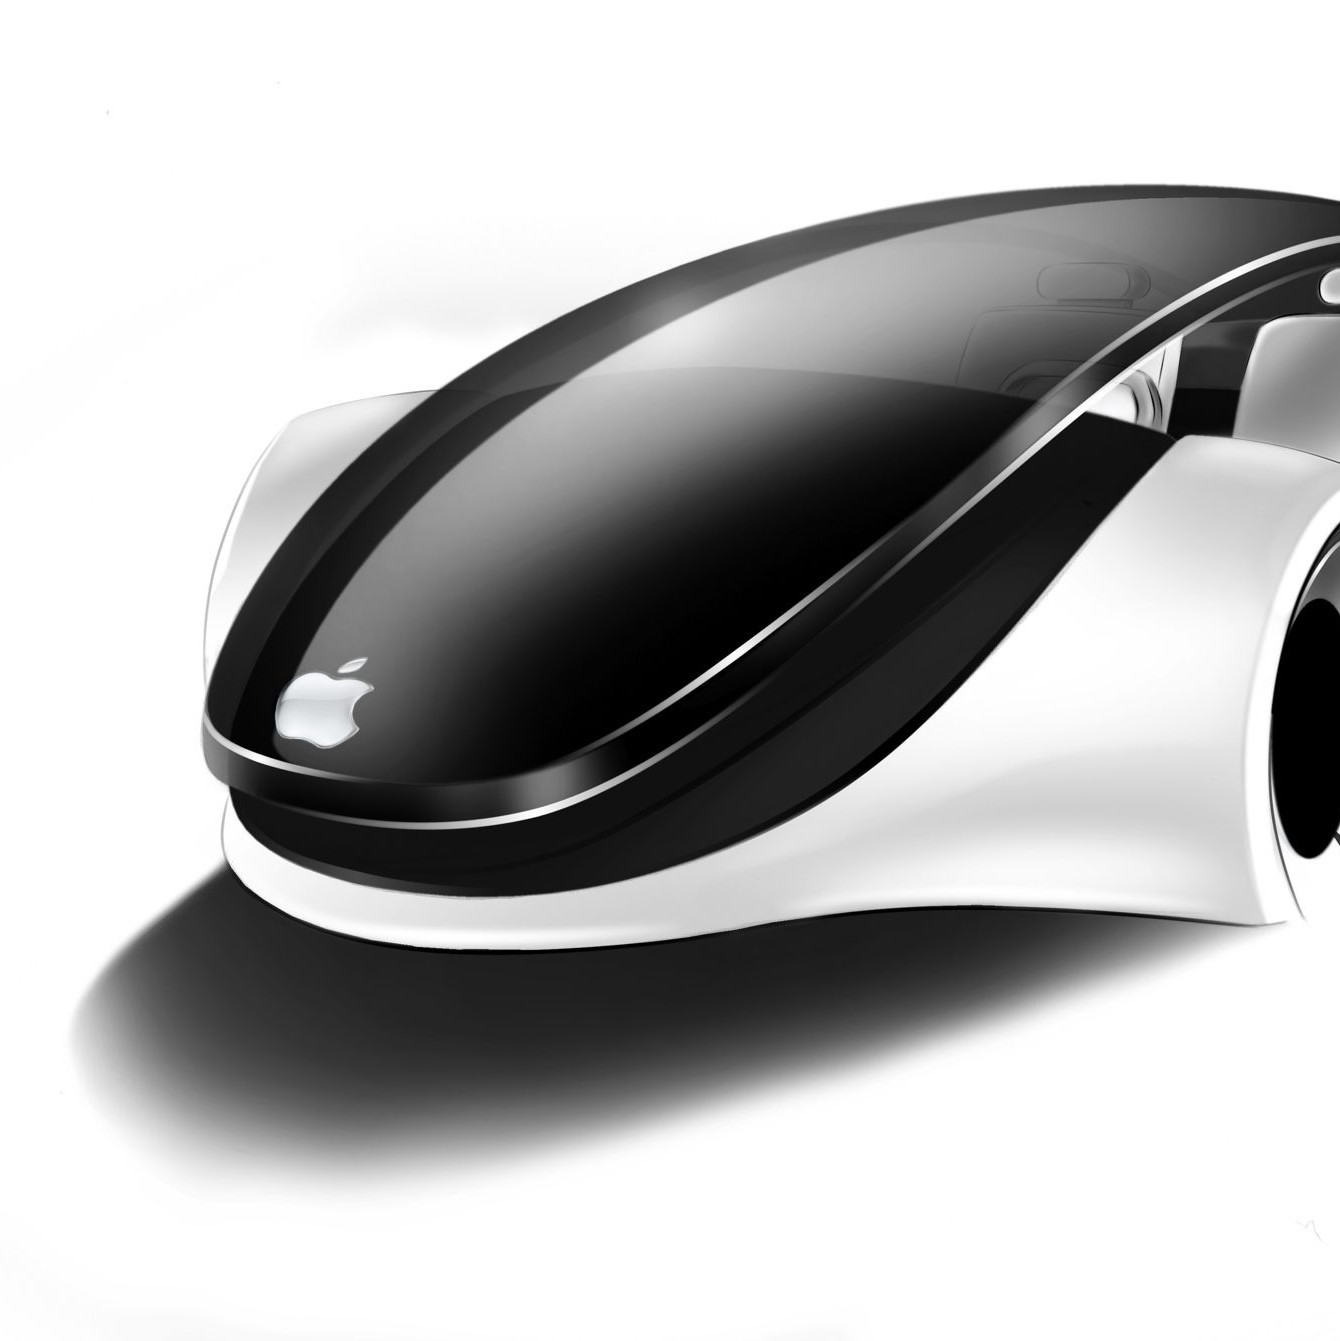 Kuo vient mettre son grain de sel dans les rumeurs sur l'Apple Car et annonce une sortie en 2025 au plus tôt